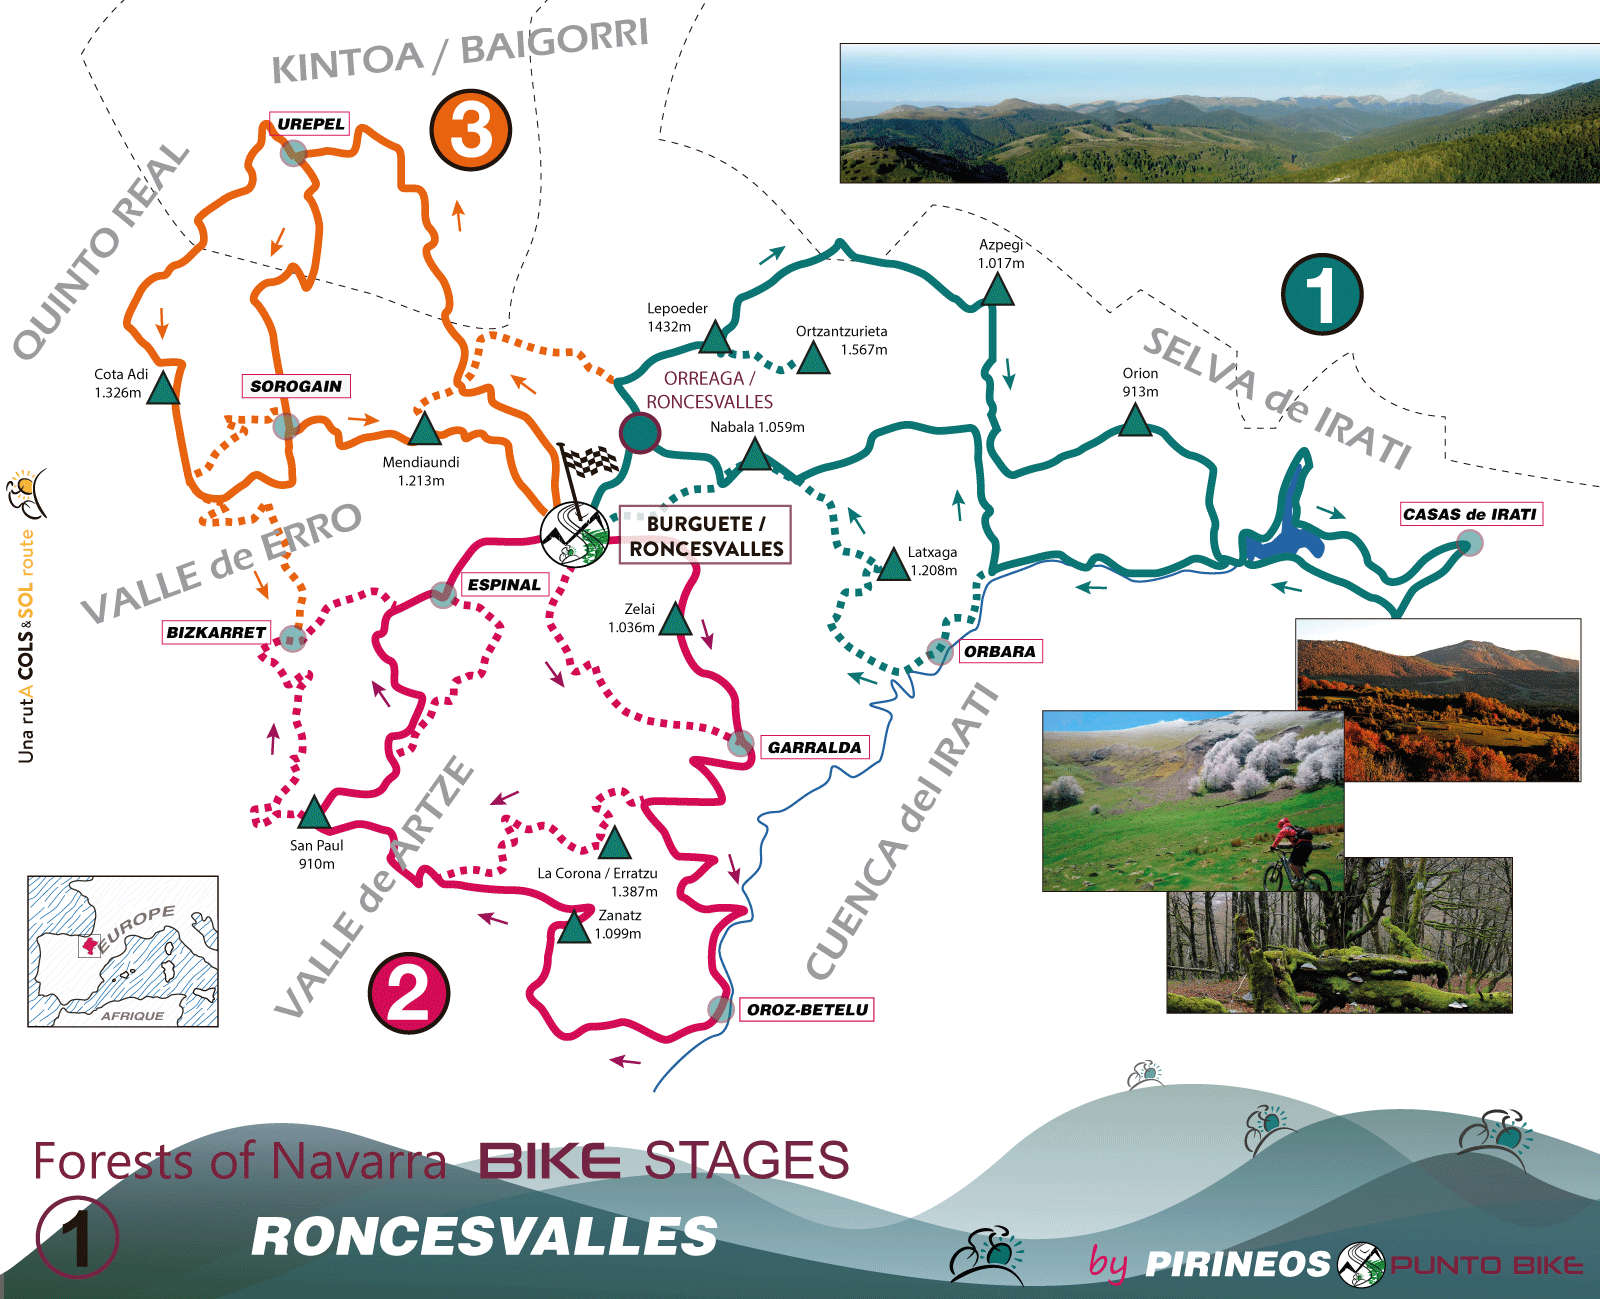 Bosques-de-Navarra-1-Roncesvalles-Map